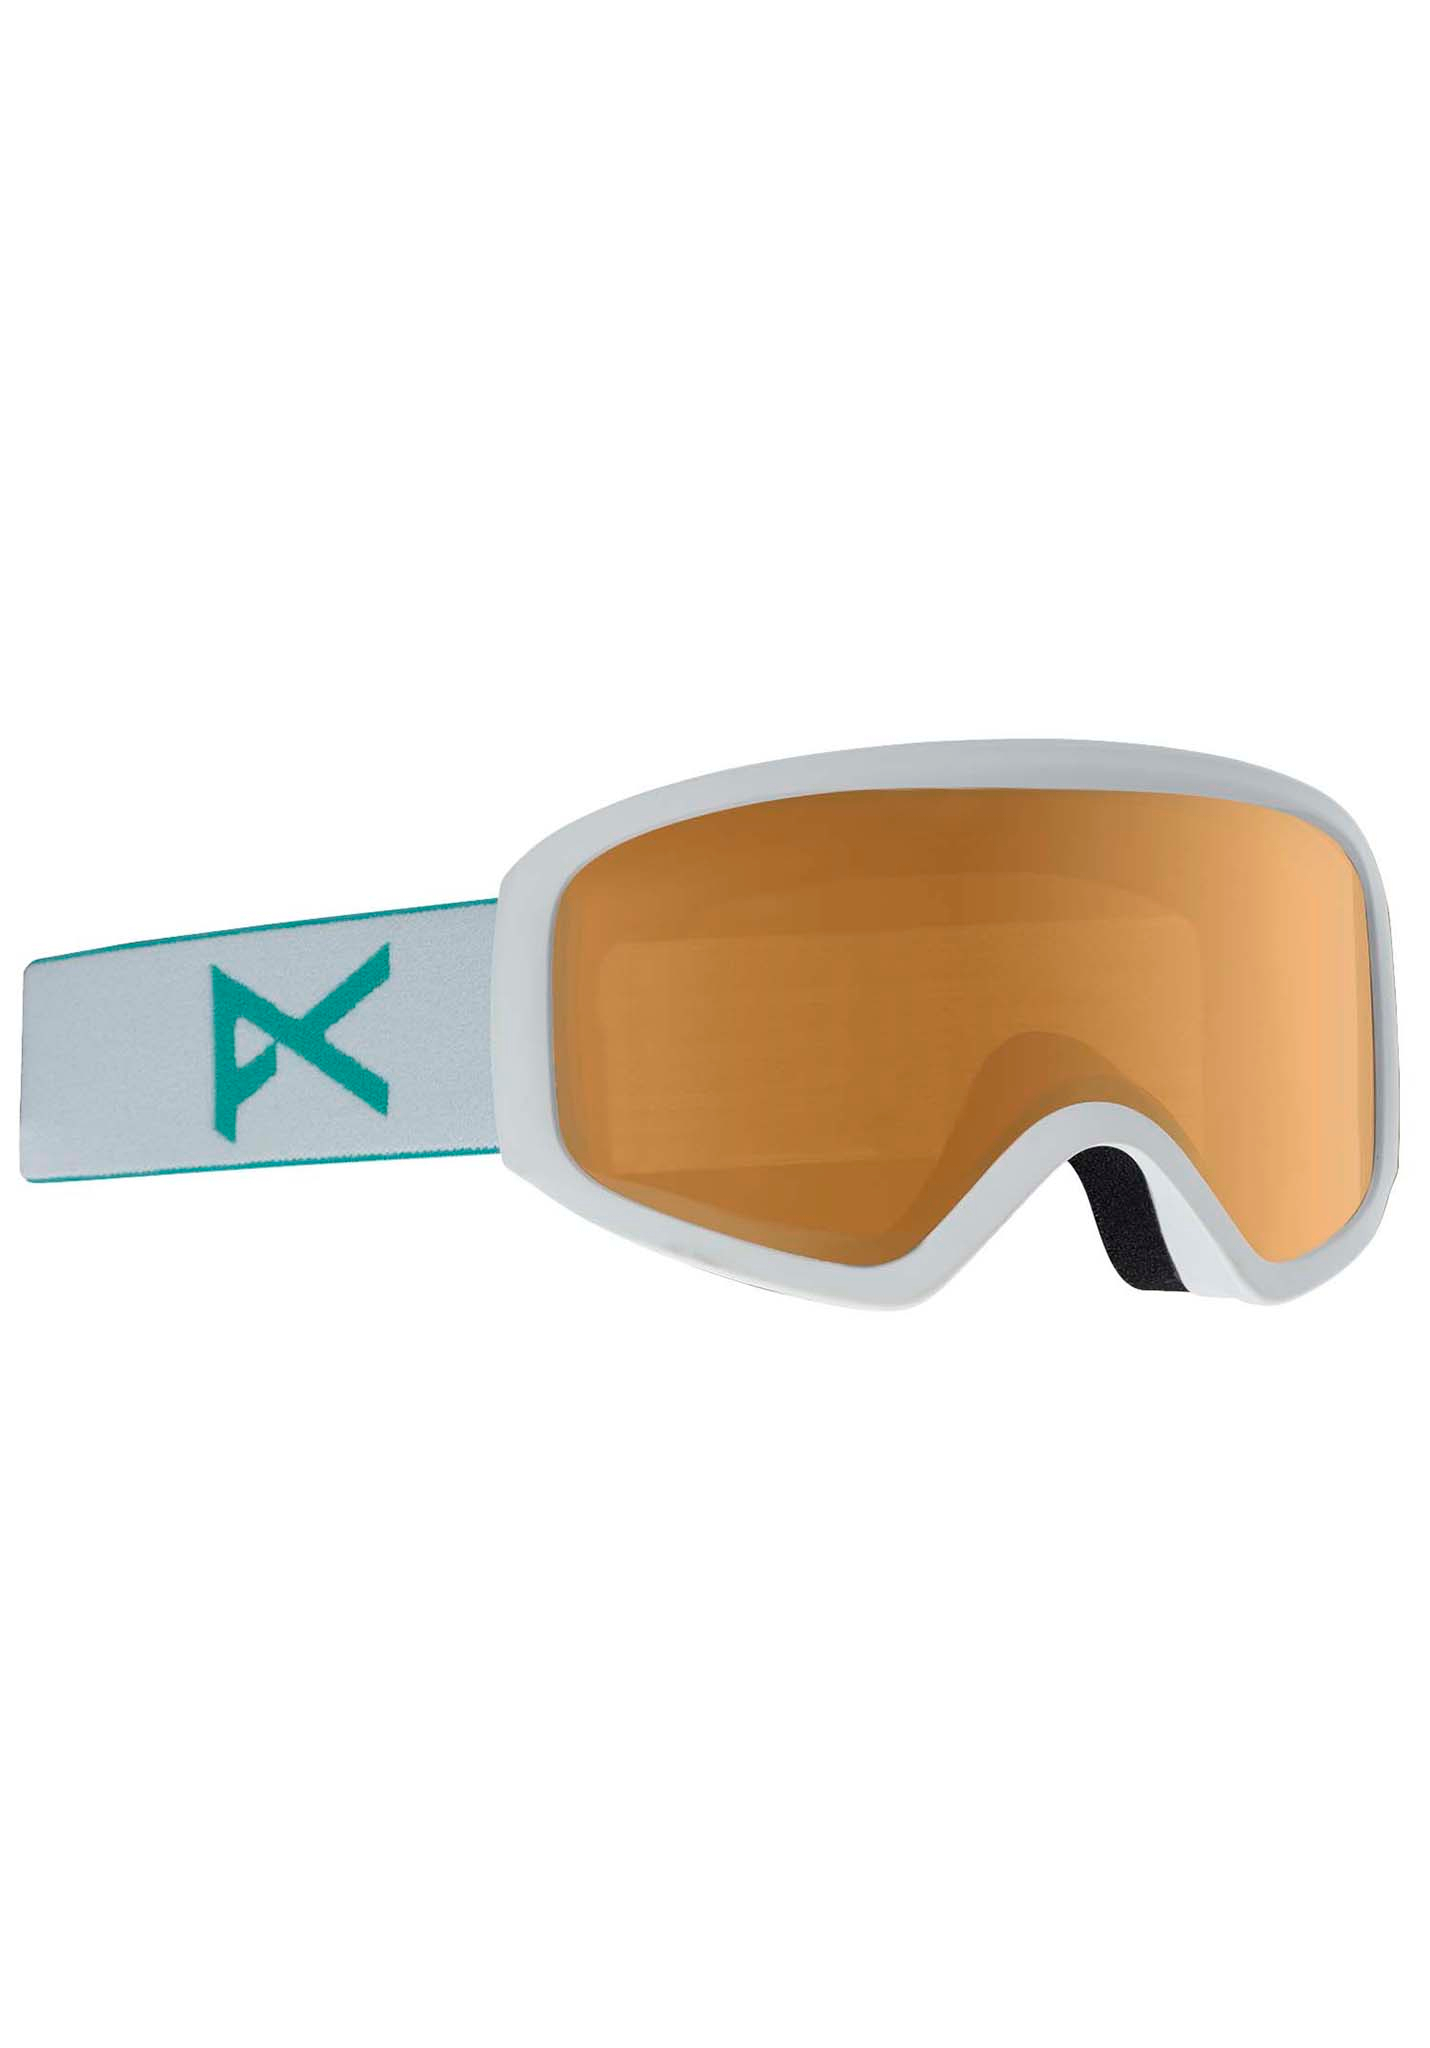 Anon Insight Snowboardbrillen weiß/bernsteinfarben One Size